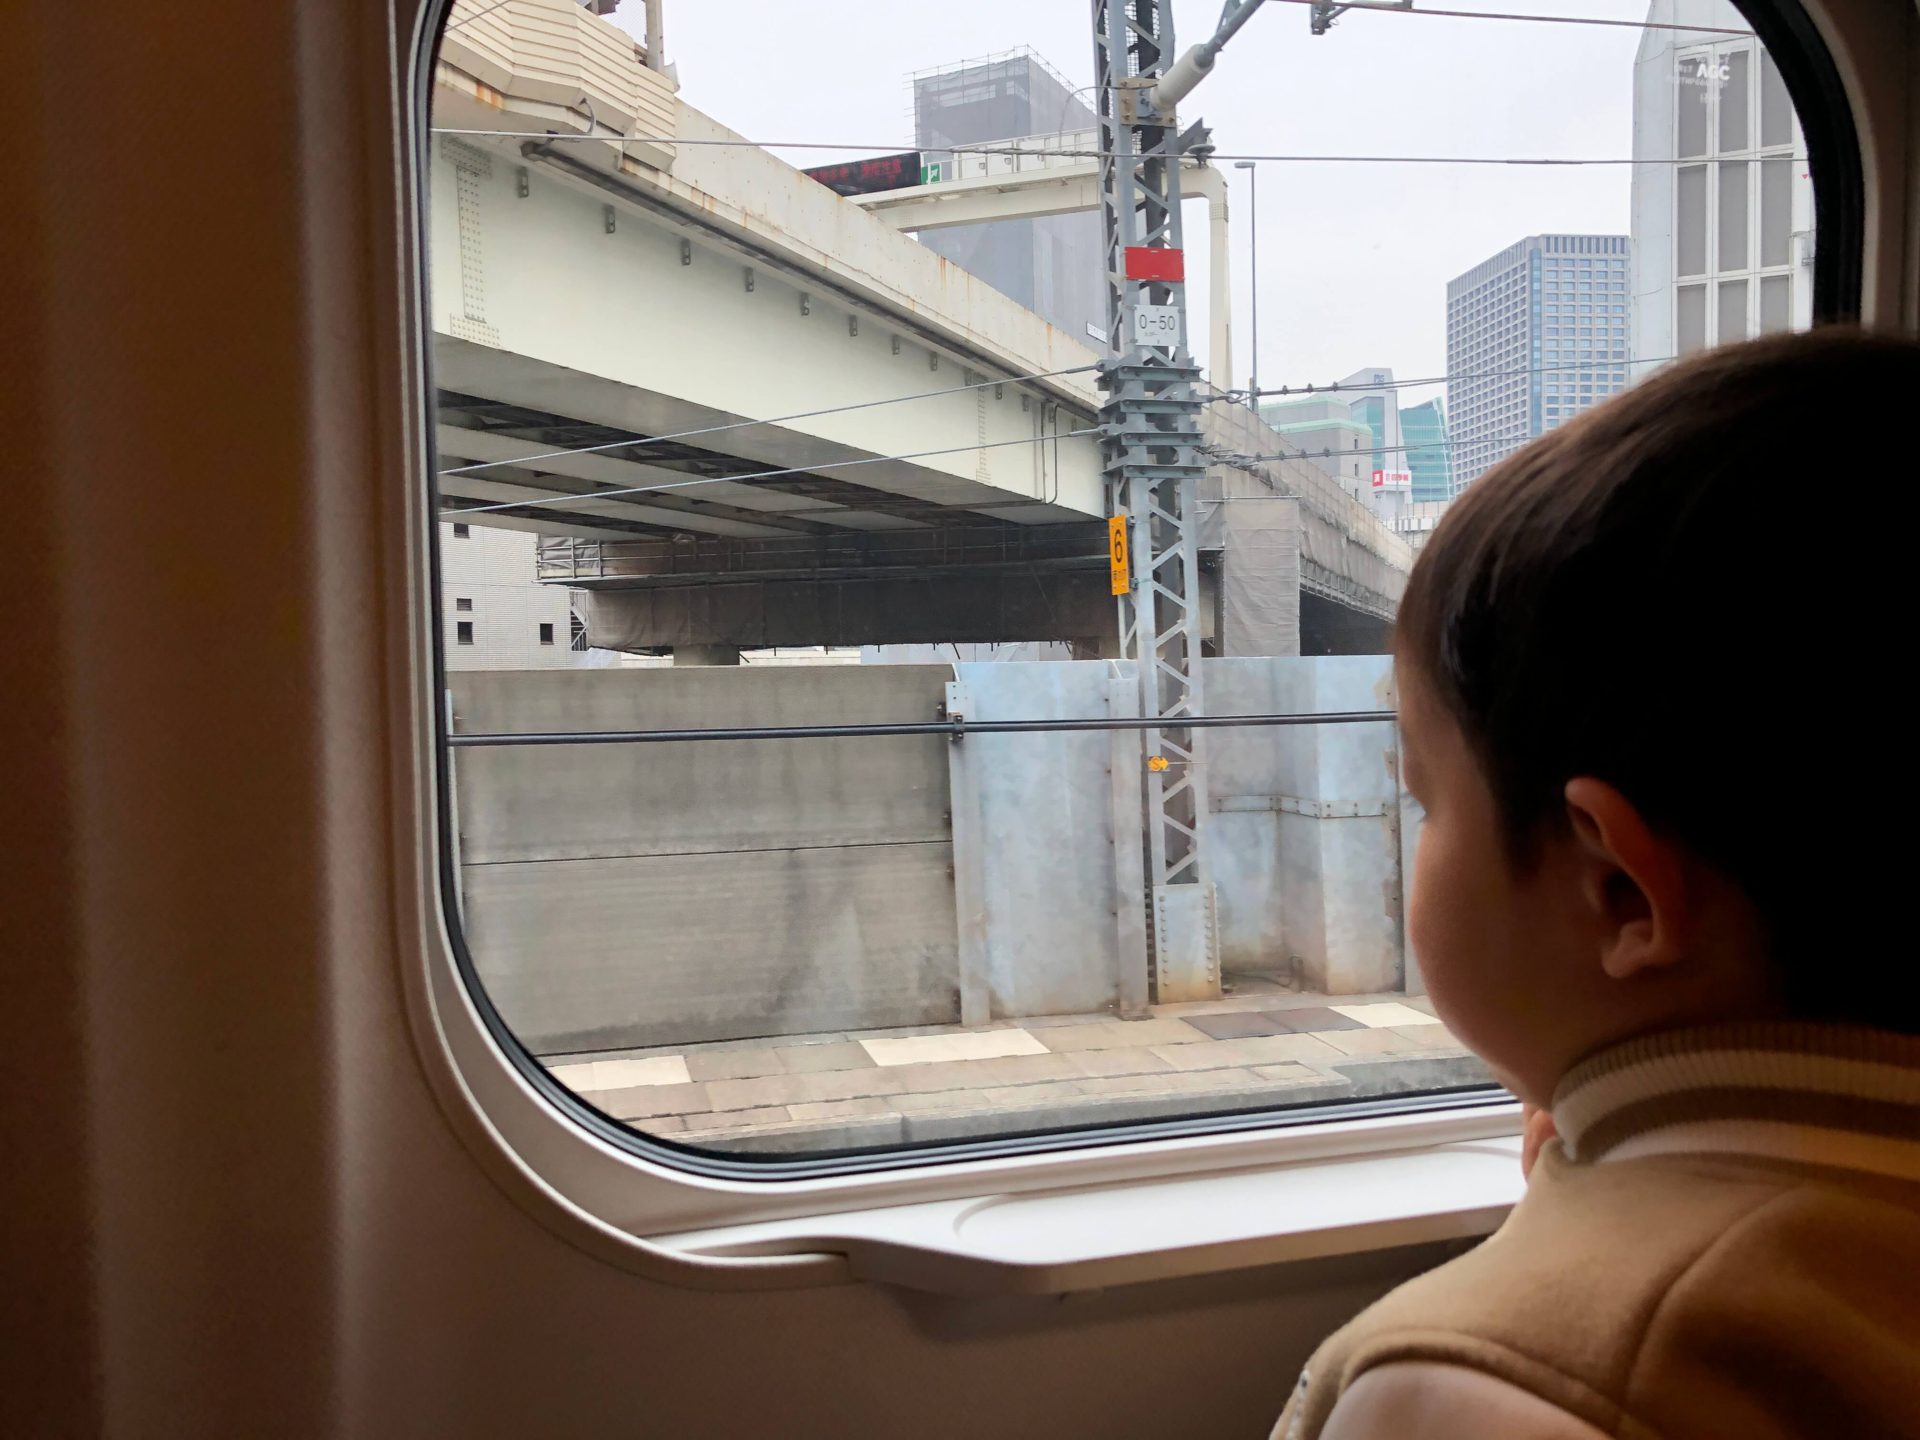 パパの子連れお出かけは新幹線見学&乗車がおすすめ!東京〜大宮